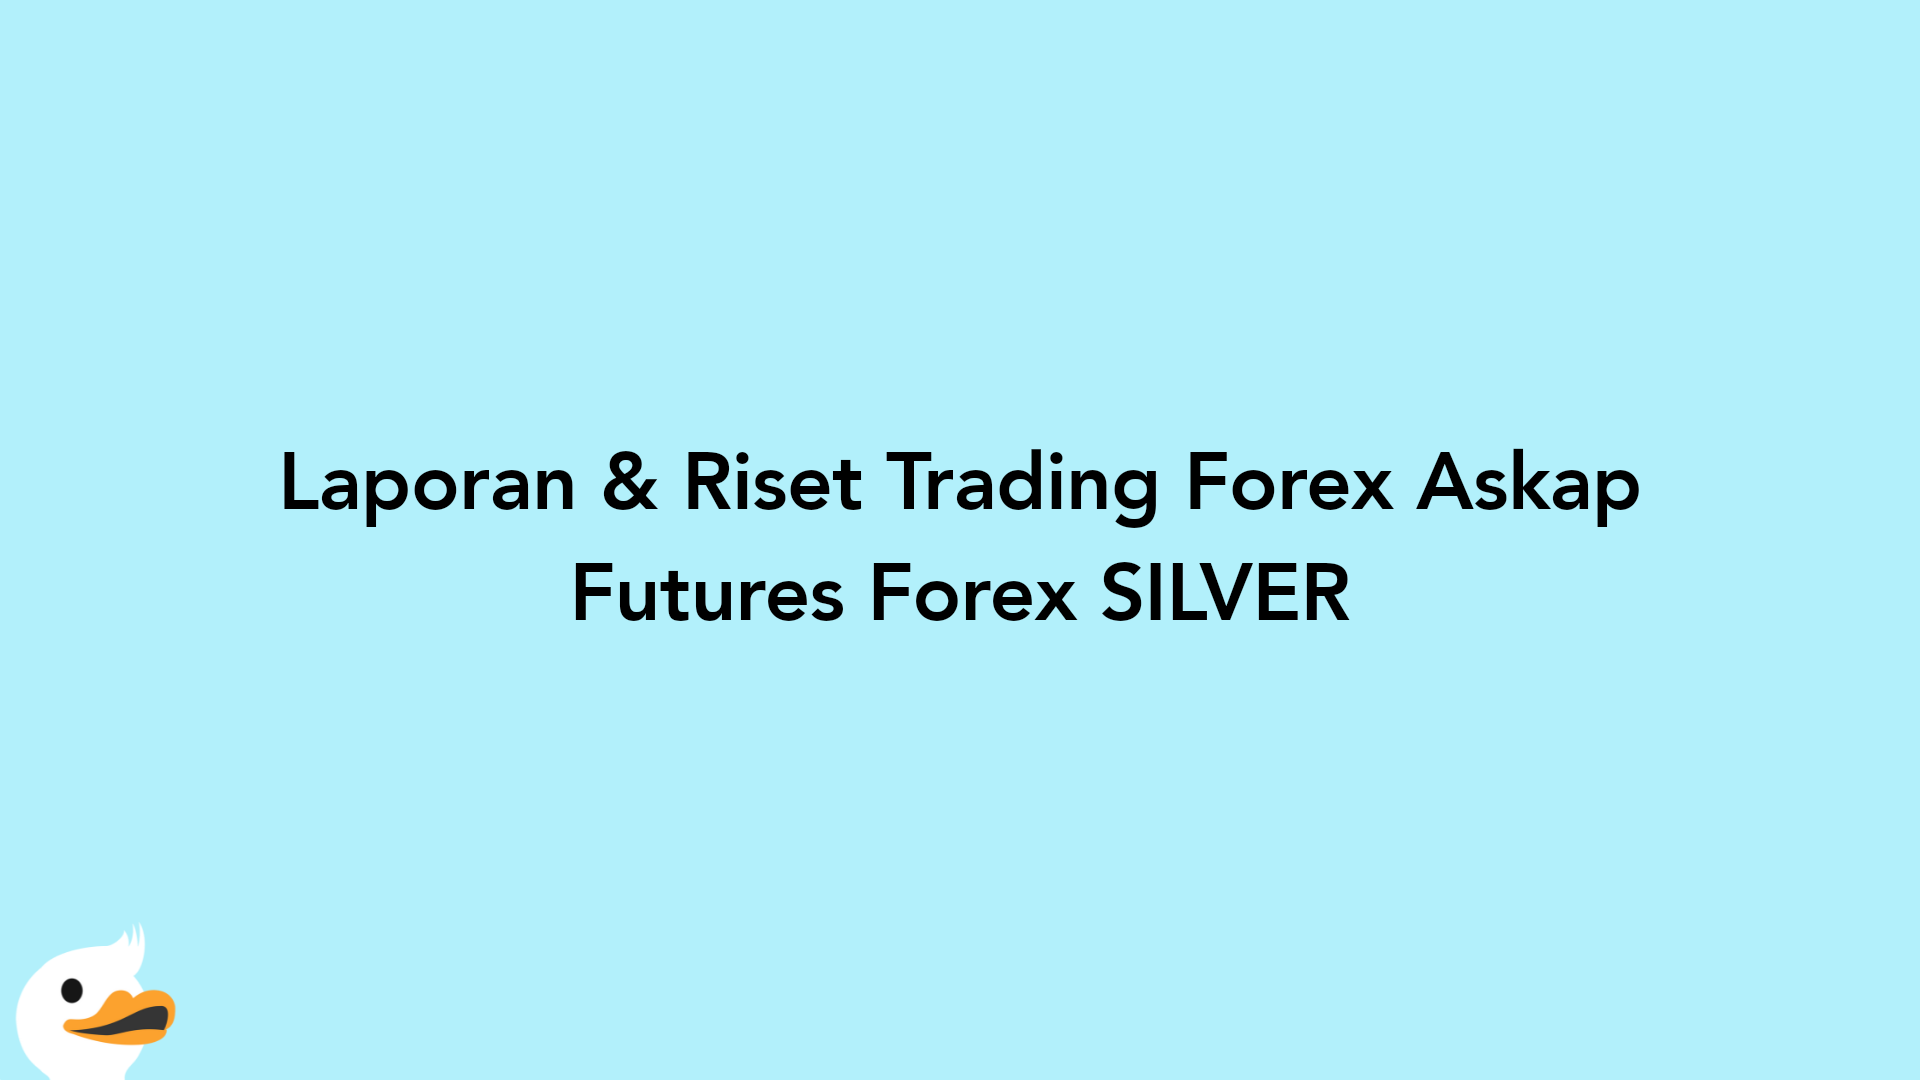 Laporan & Riset Trading Forex Askap Futures Forex SILVER